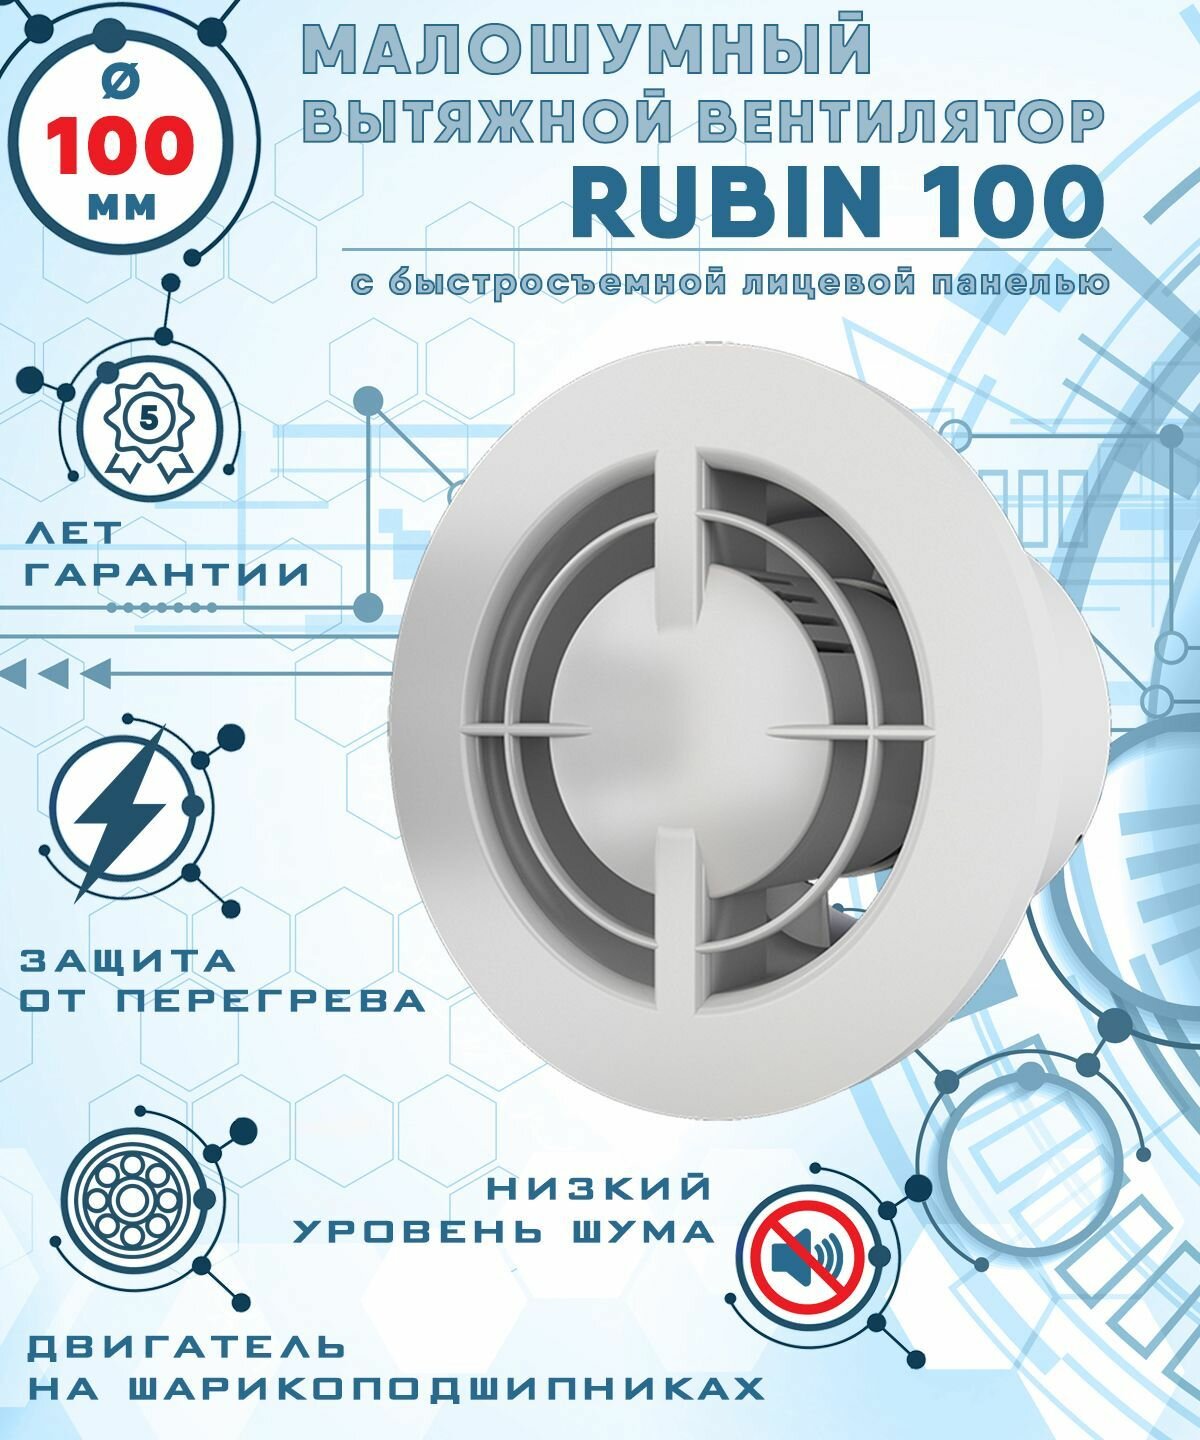 RUBIN 100 вентилятор вытяжной малошумный 27 Дб энергоэффективный 8 Вт на шарикоподшипниках с легкосъемной лицевой панелью диаметр 100 мм ZERNBERG